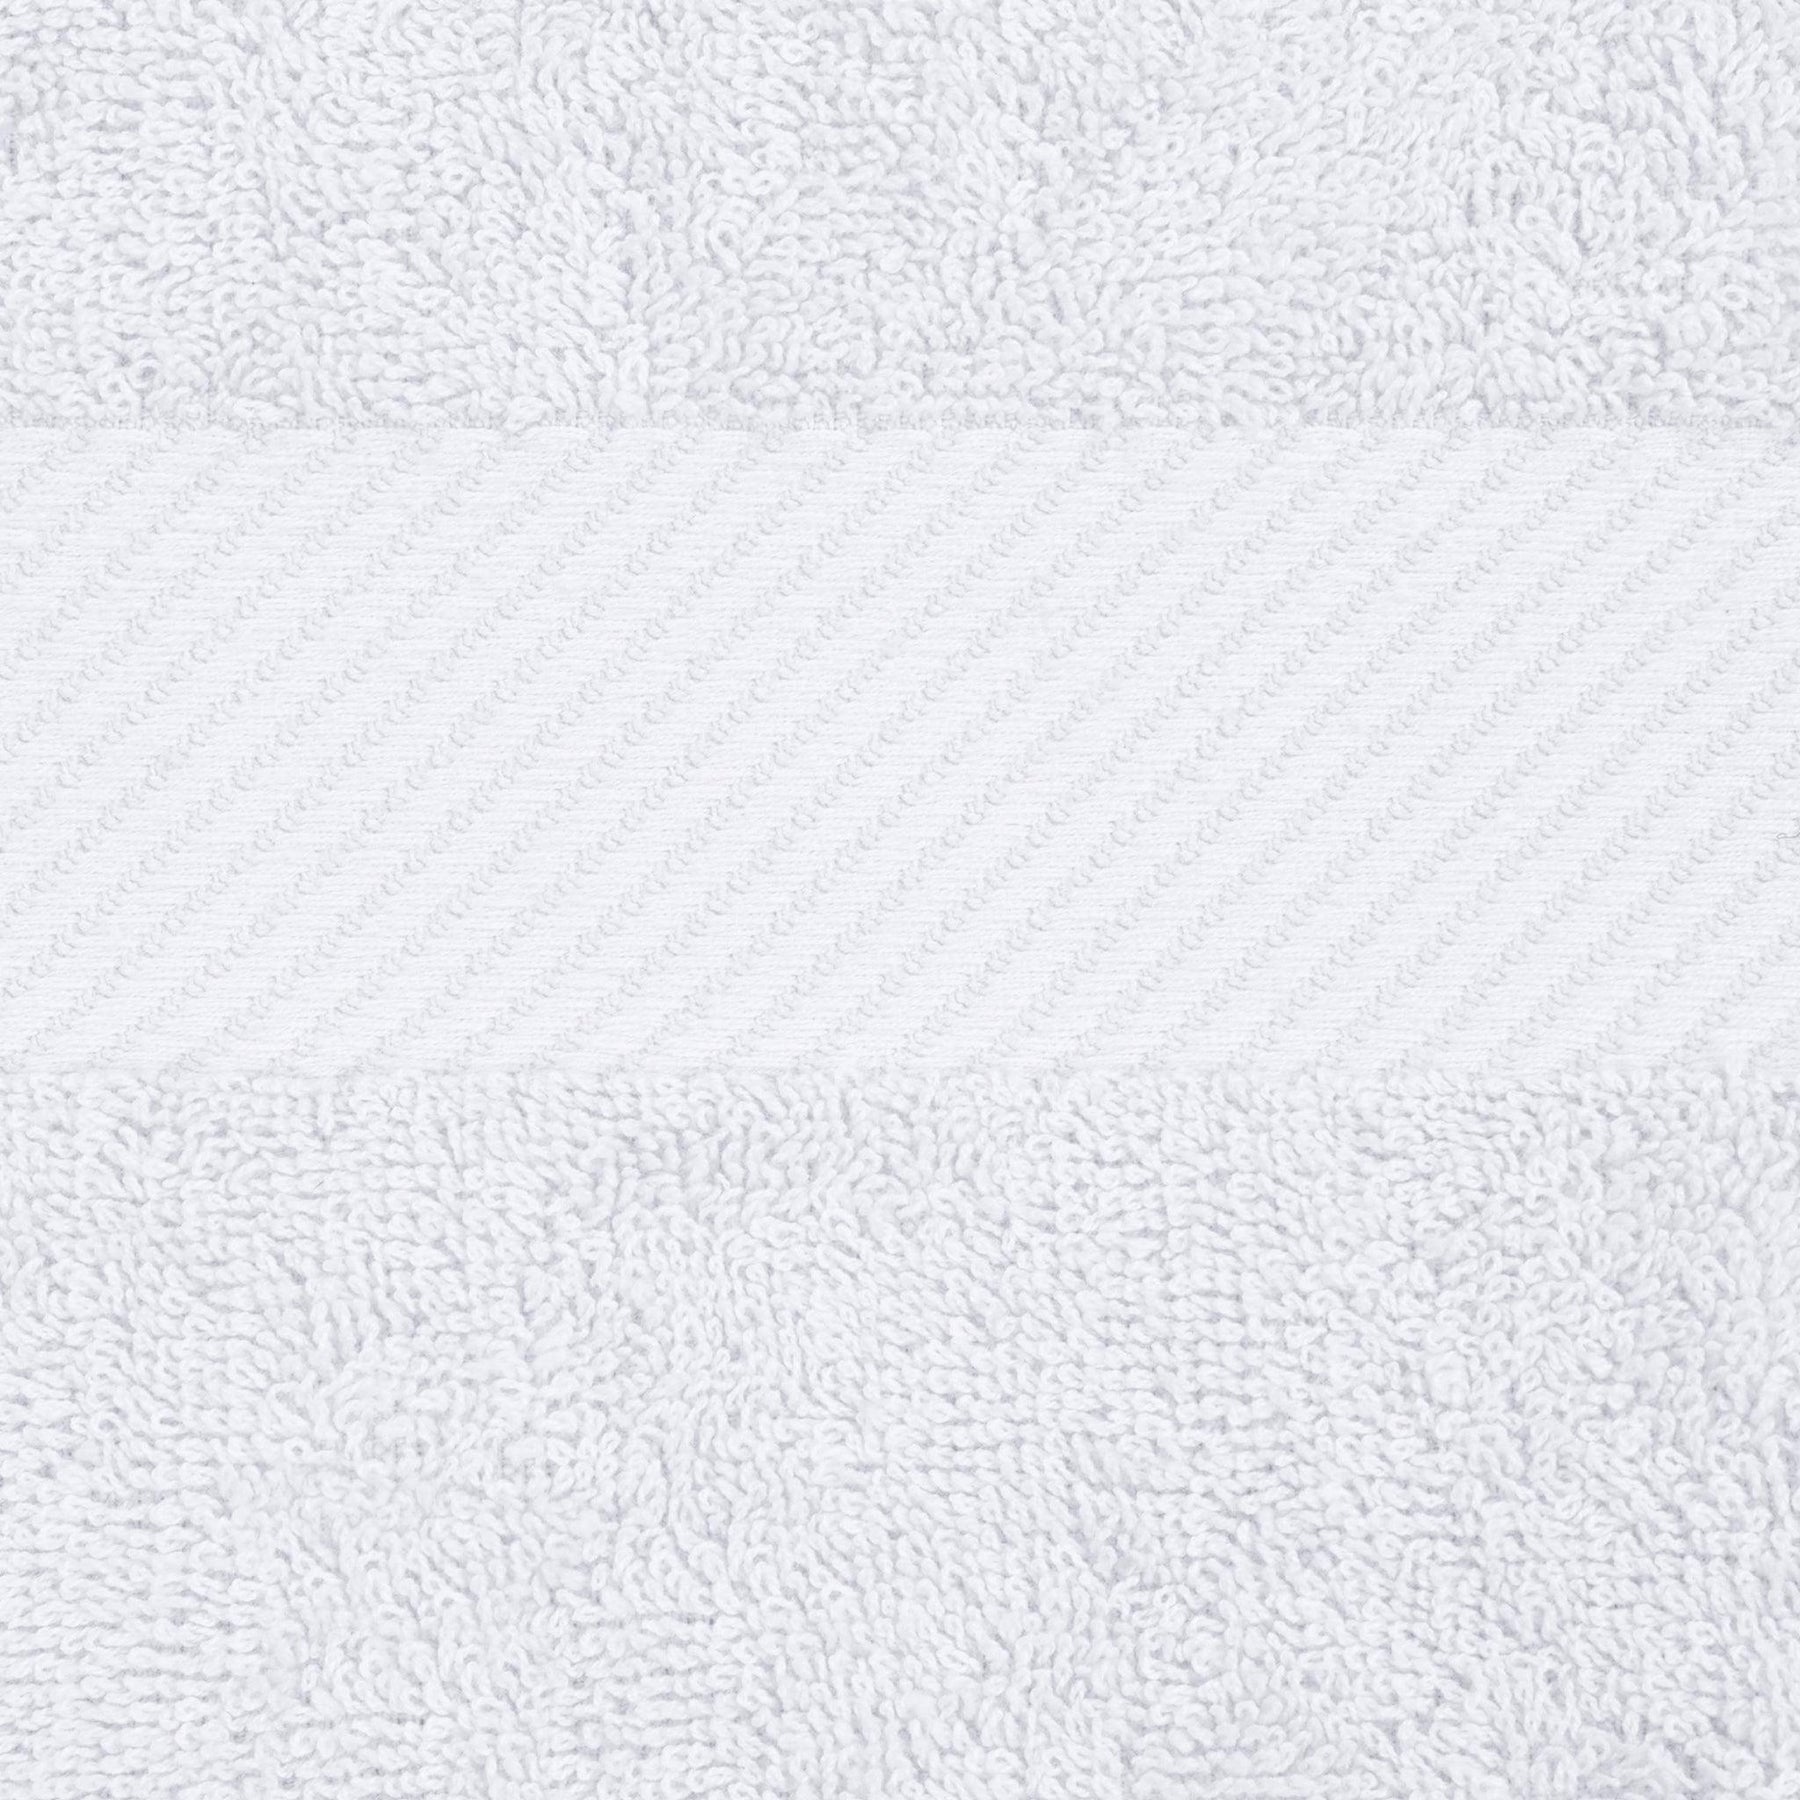 Egyptian Cotton Dobby Border Medium Weight 4 Piece Bath Towel Set - White